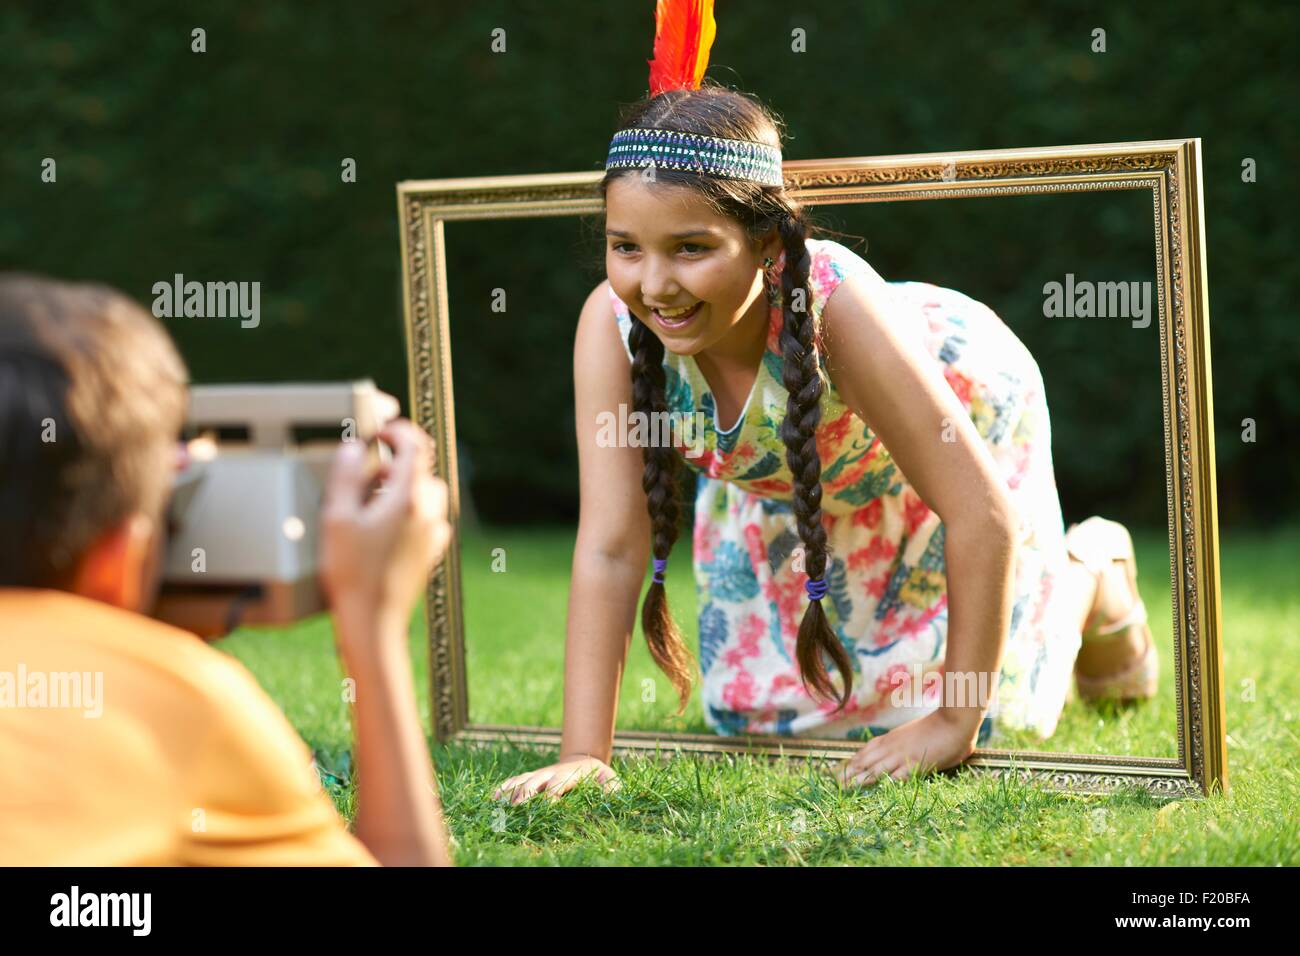 Chica arrodillada, mirando a través del marco de imagen, habiendo fotografía Foto de stock